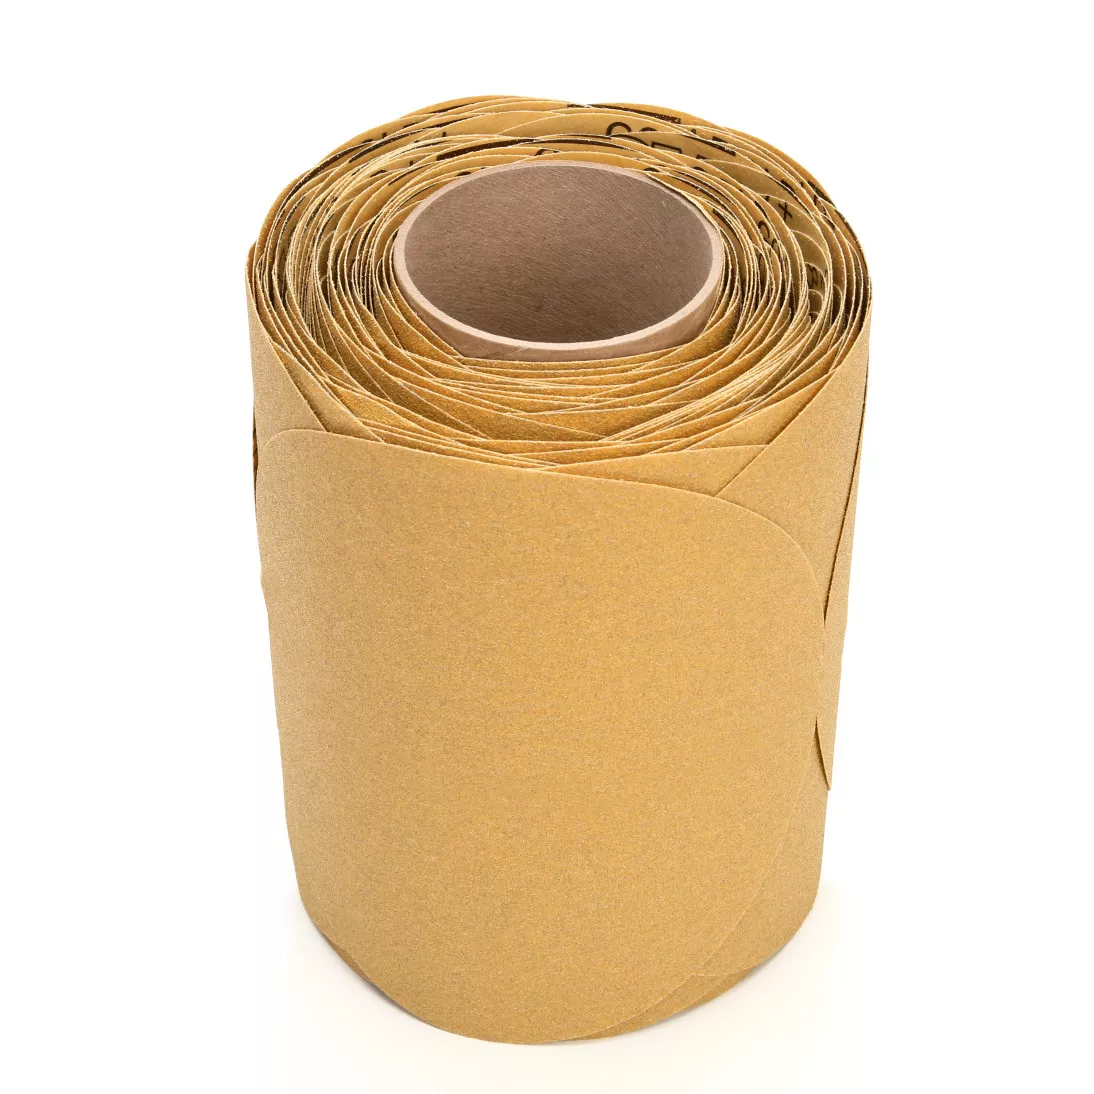 3M™ Stikit™ Gold Disc Roll, 01493, 8 in, P80, 125 discs per roll, 4
rolls per case